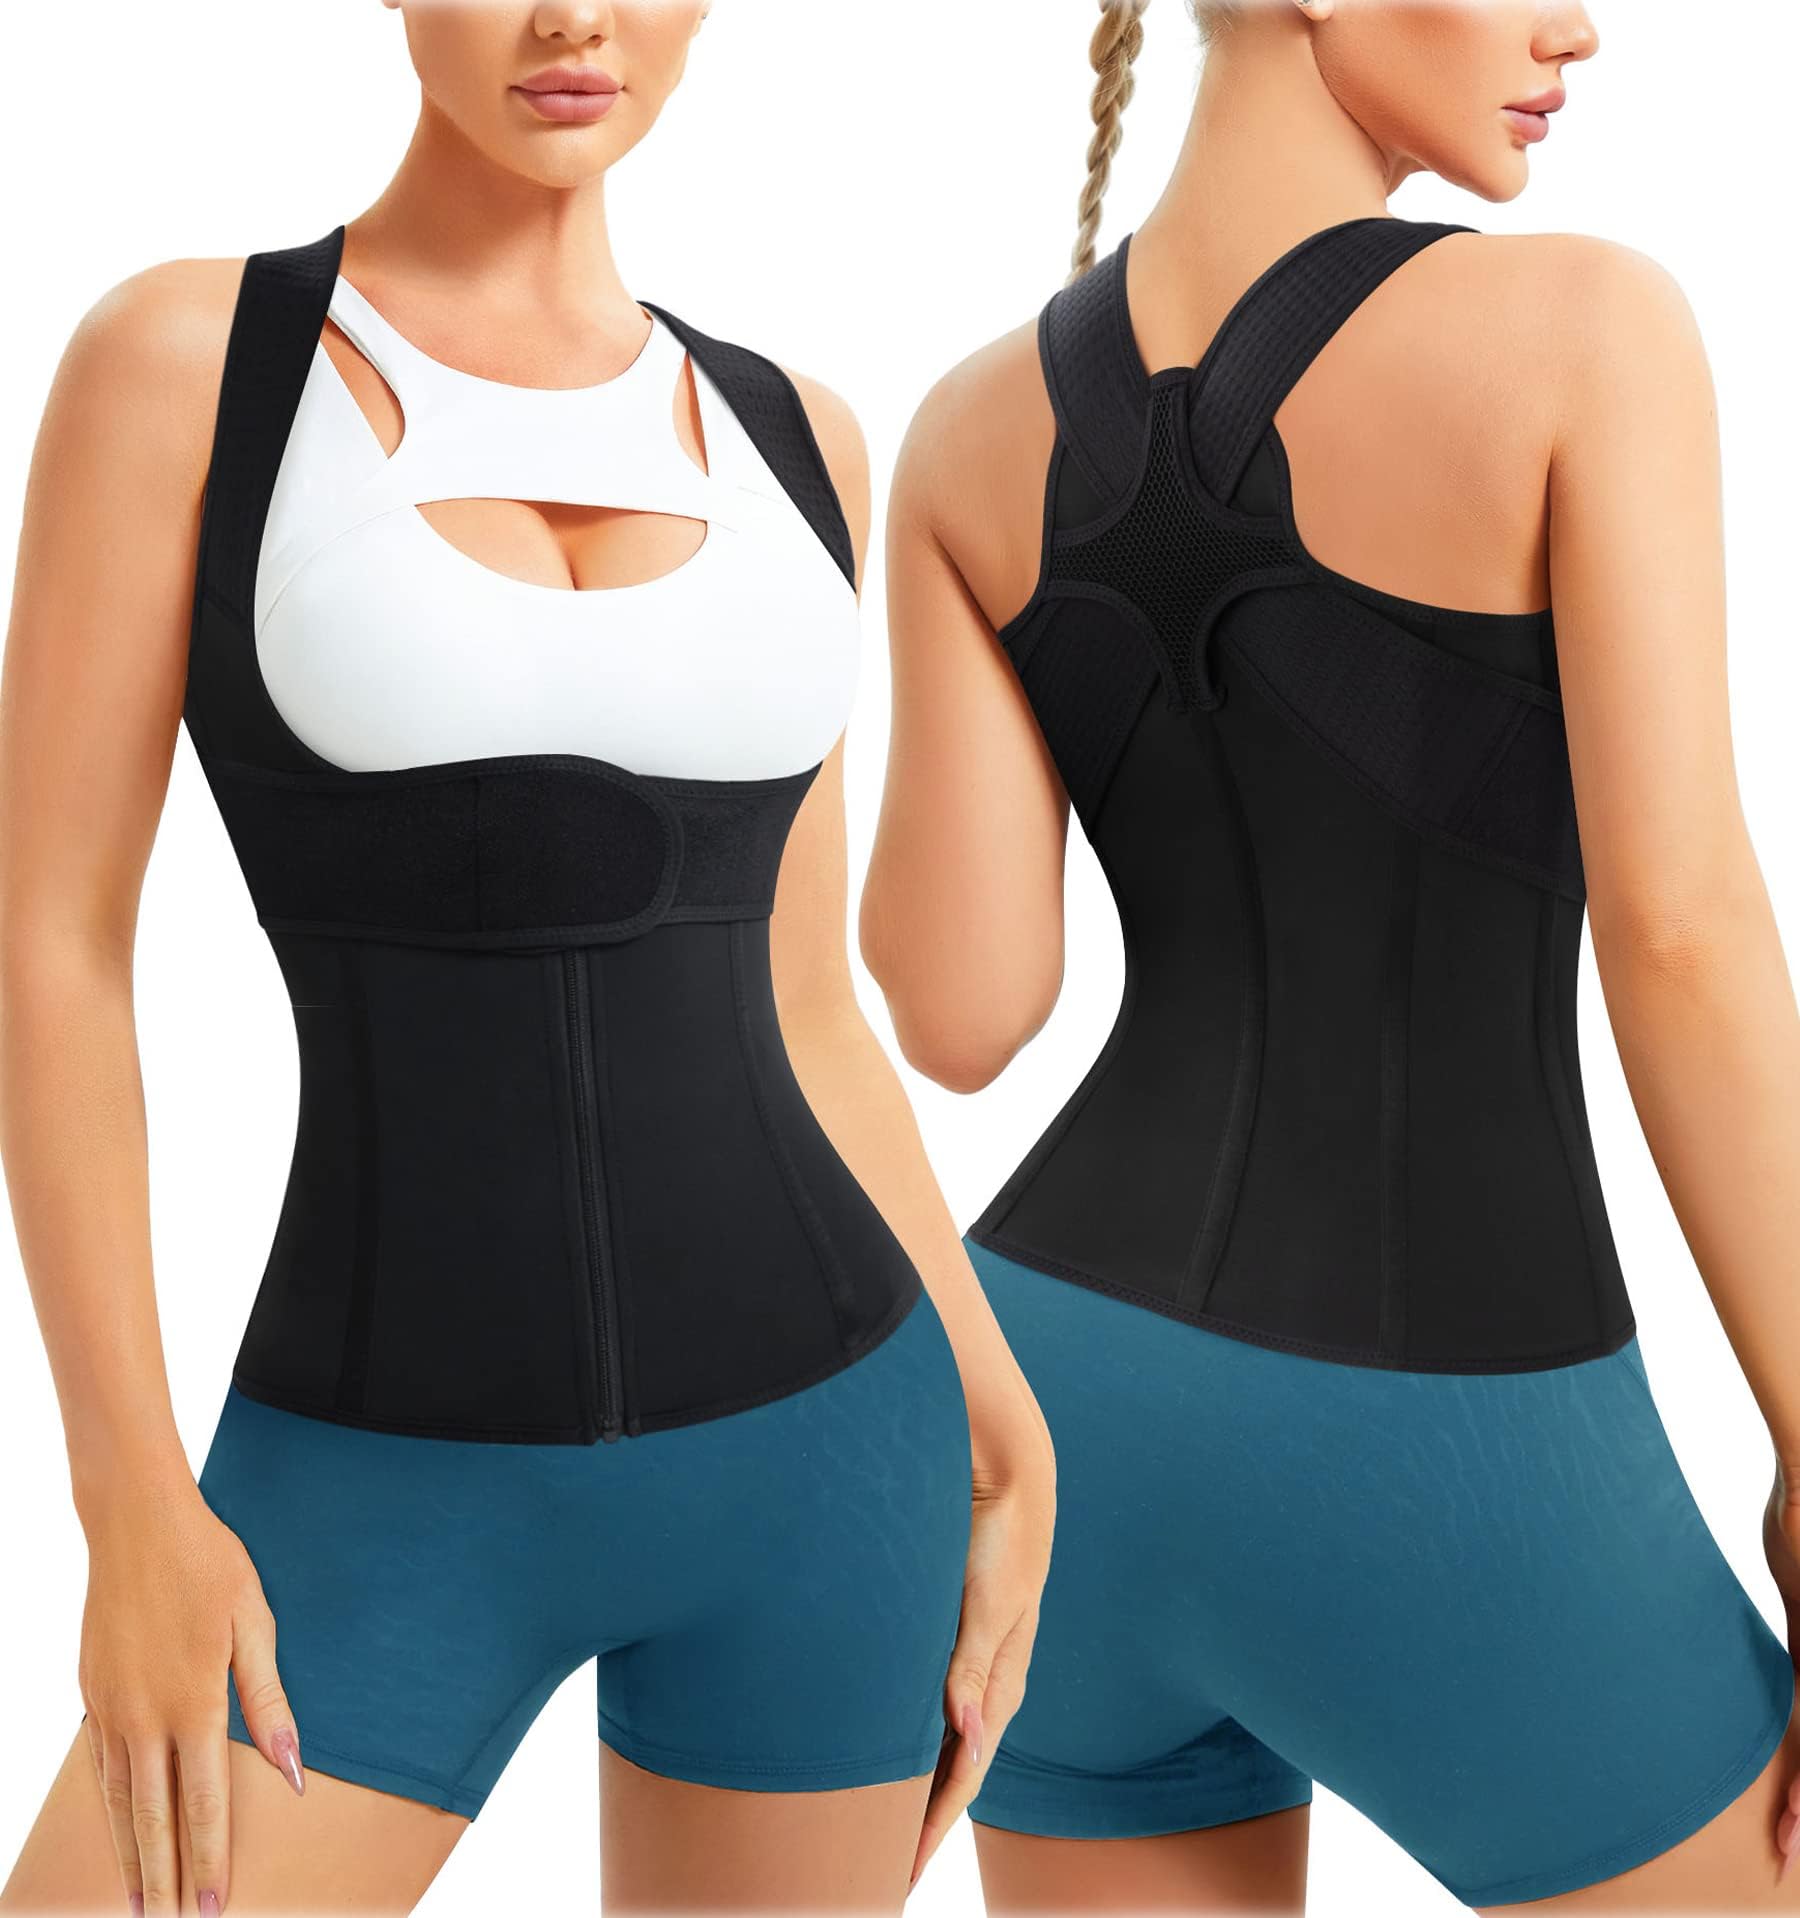 Gotoly Women Back Brace Posture Corrector Waist Trainer Vest Adjustable  Back Straightener Support for Spinal Neck Shoulder Tummy Control Body Shaper  Black XXL